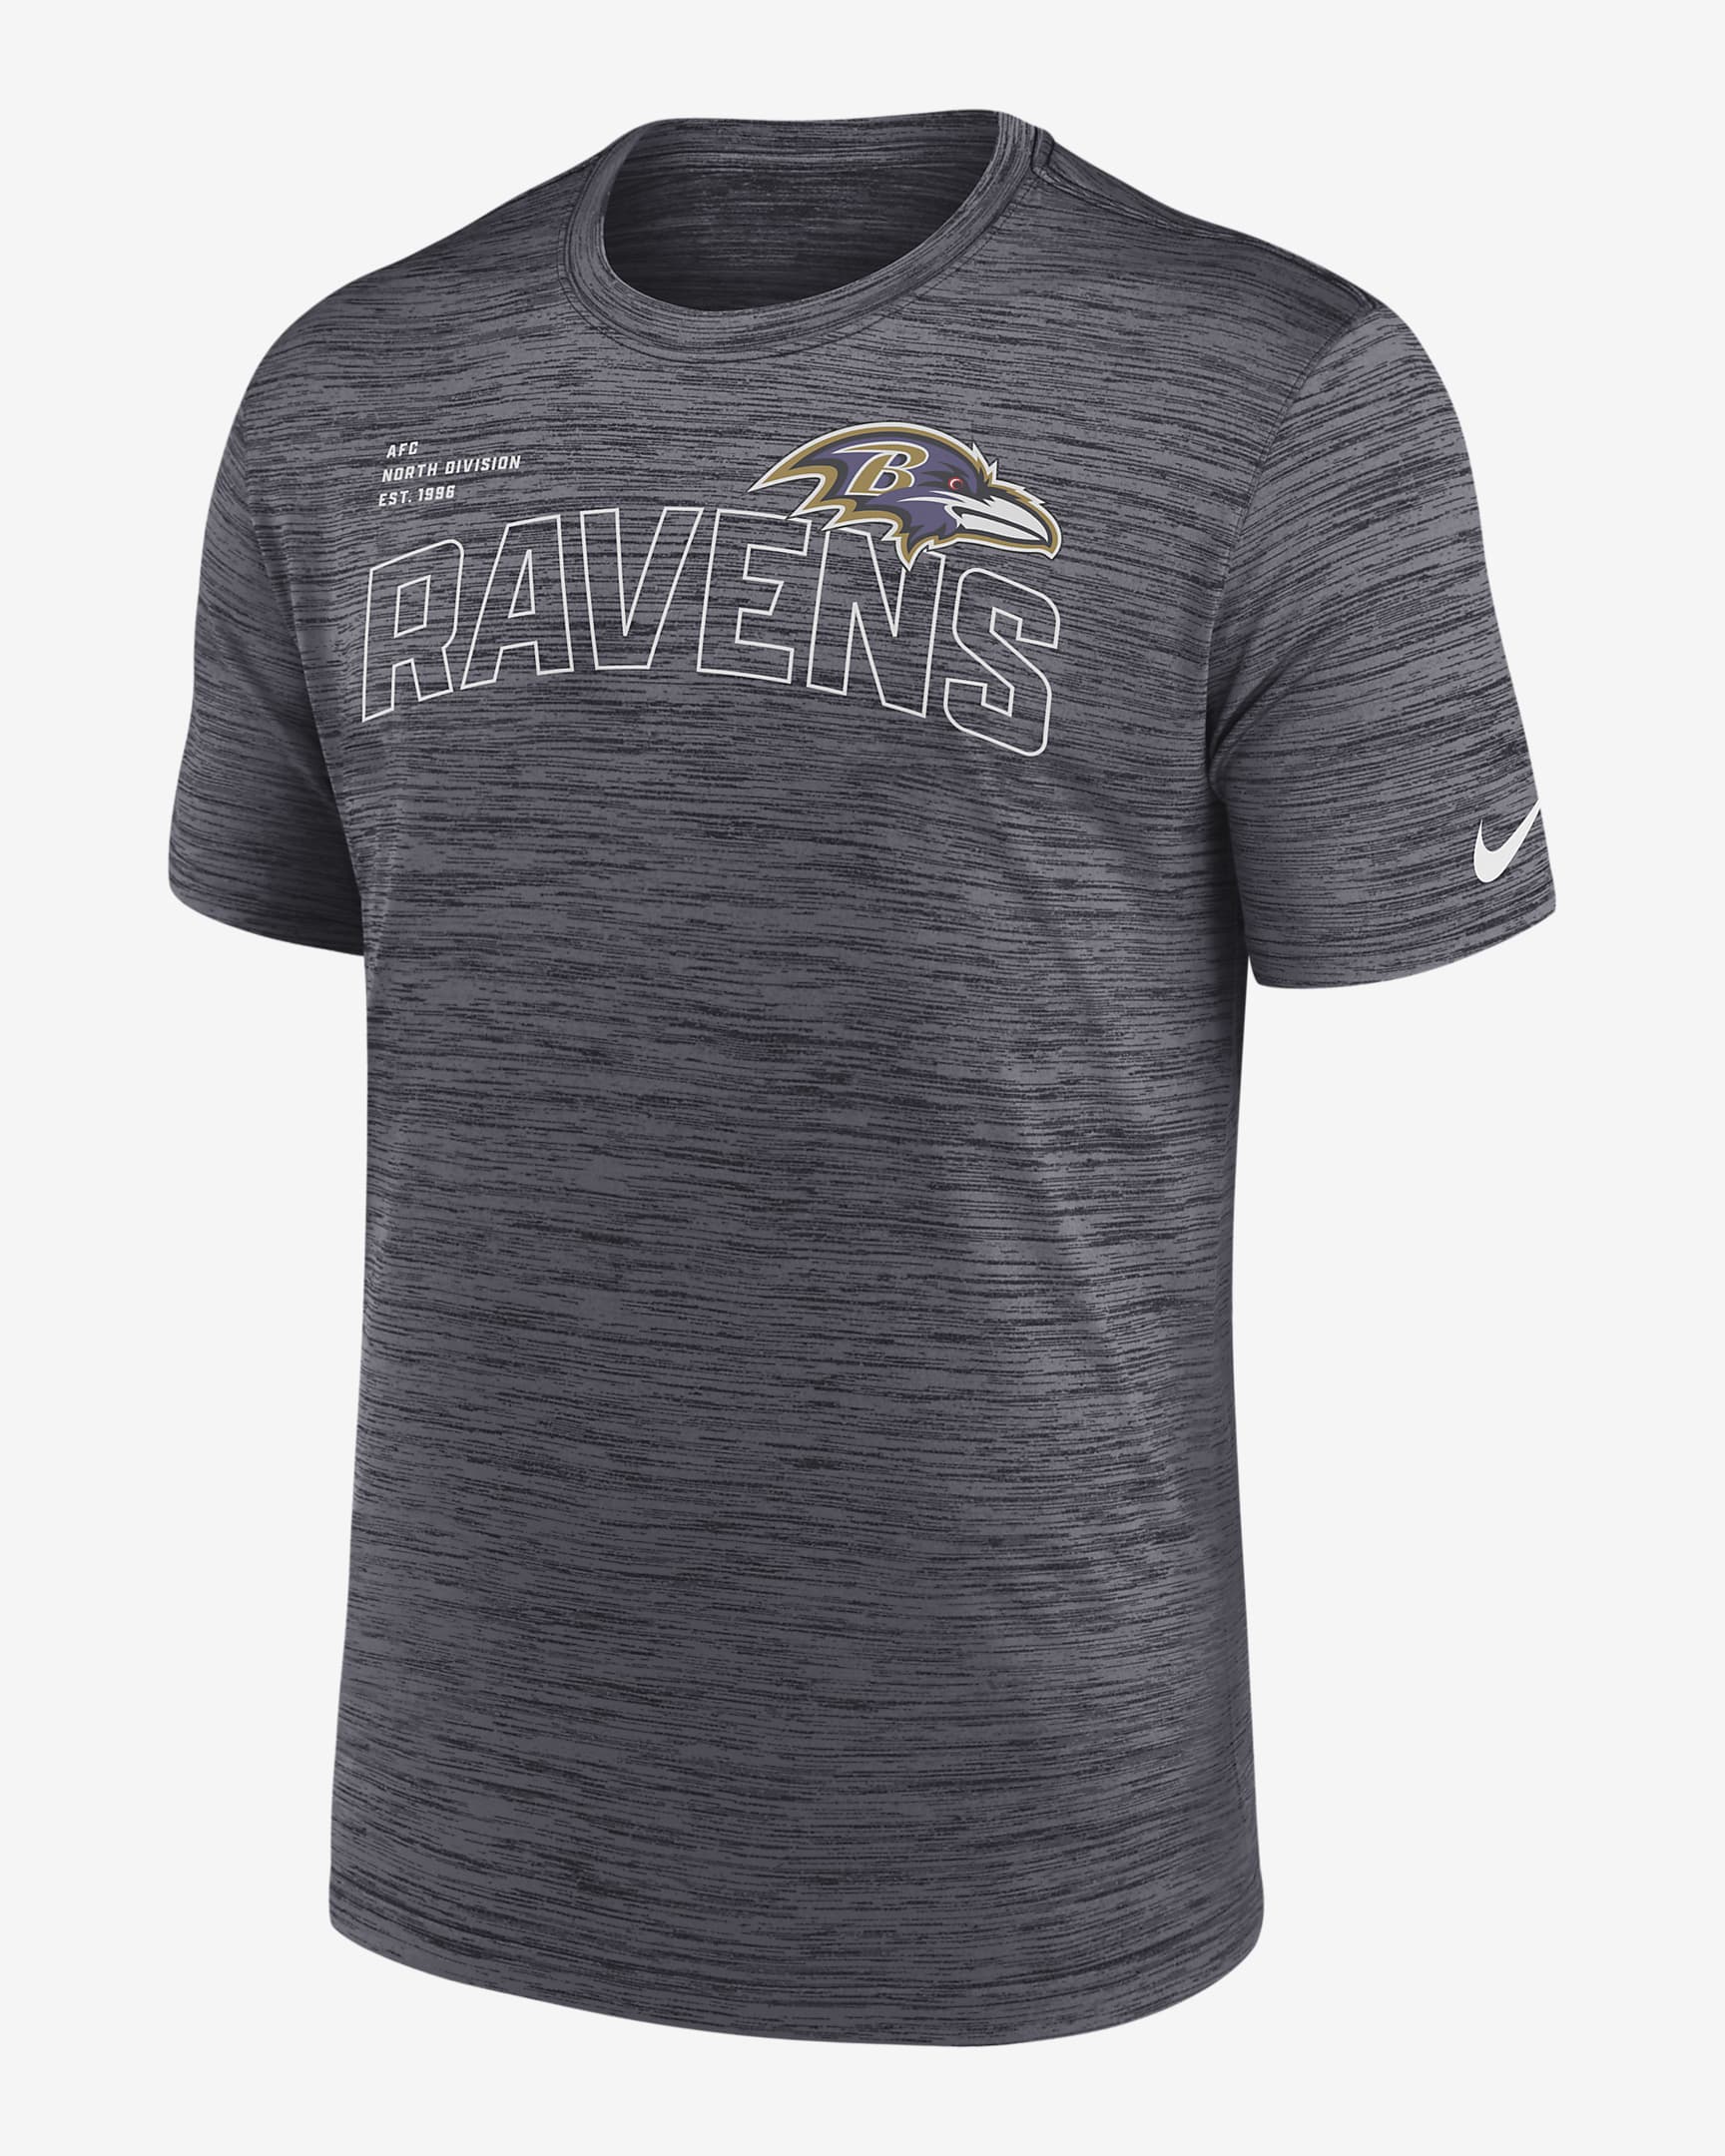 Playera Nike de la NFL para hombre Baltimore Ravens Velocity Arch. Nike.com